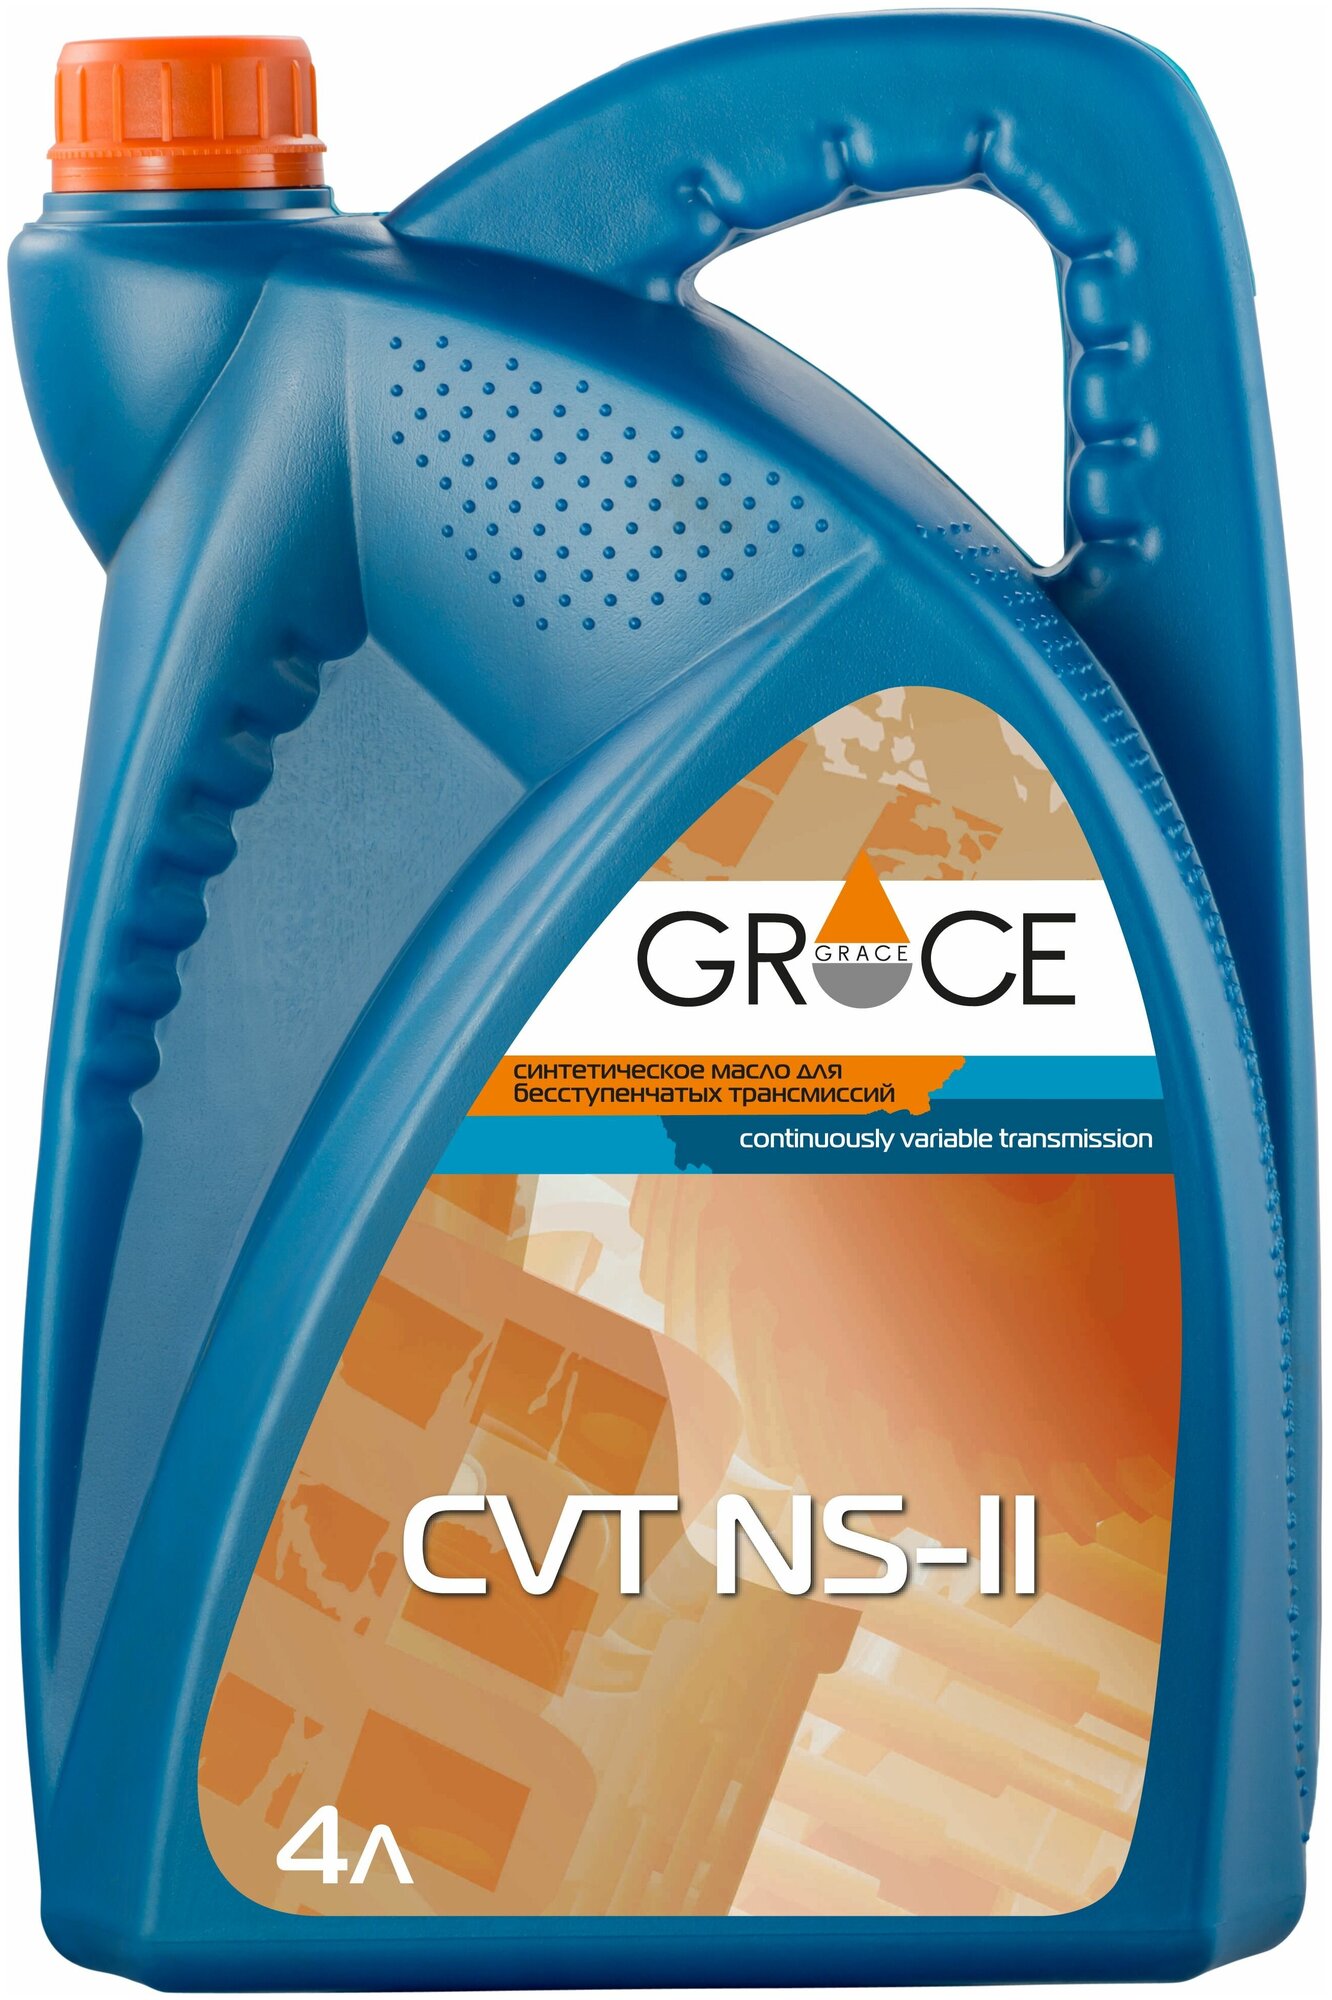 Трансмиссионное масло Grace CVT NS-II, 4 литра